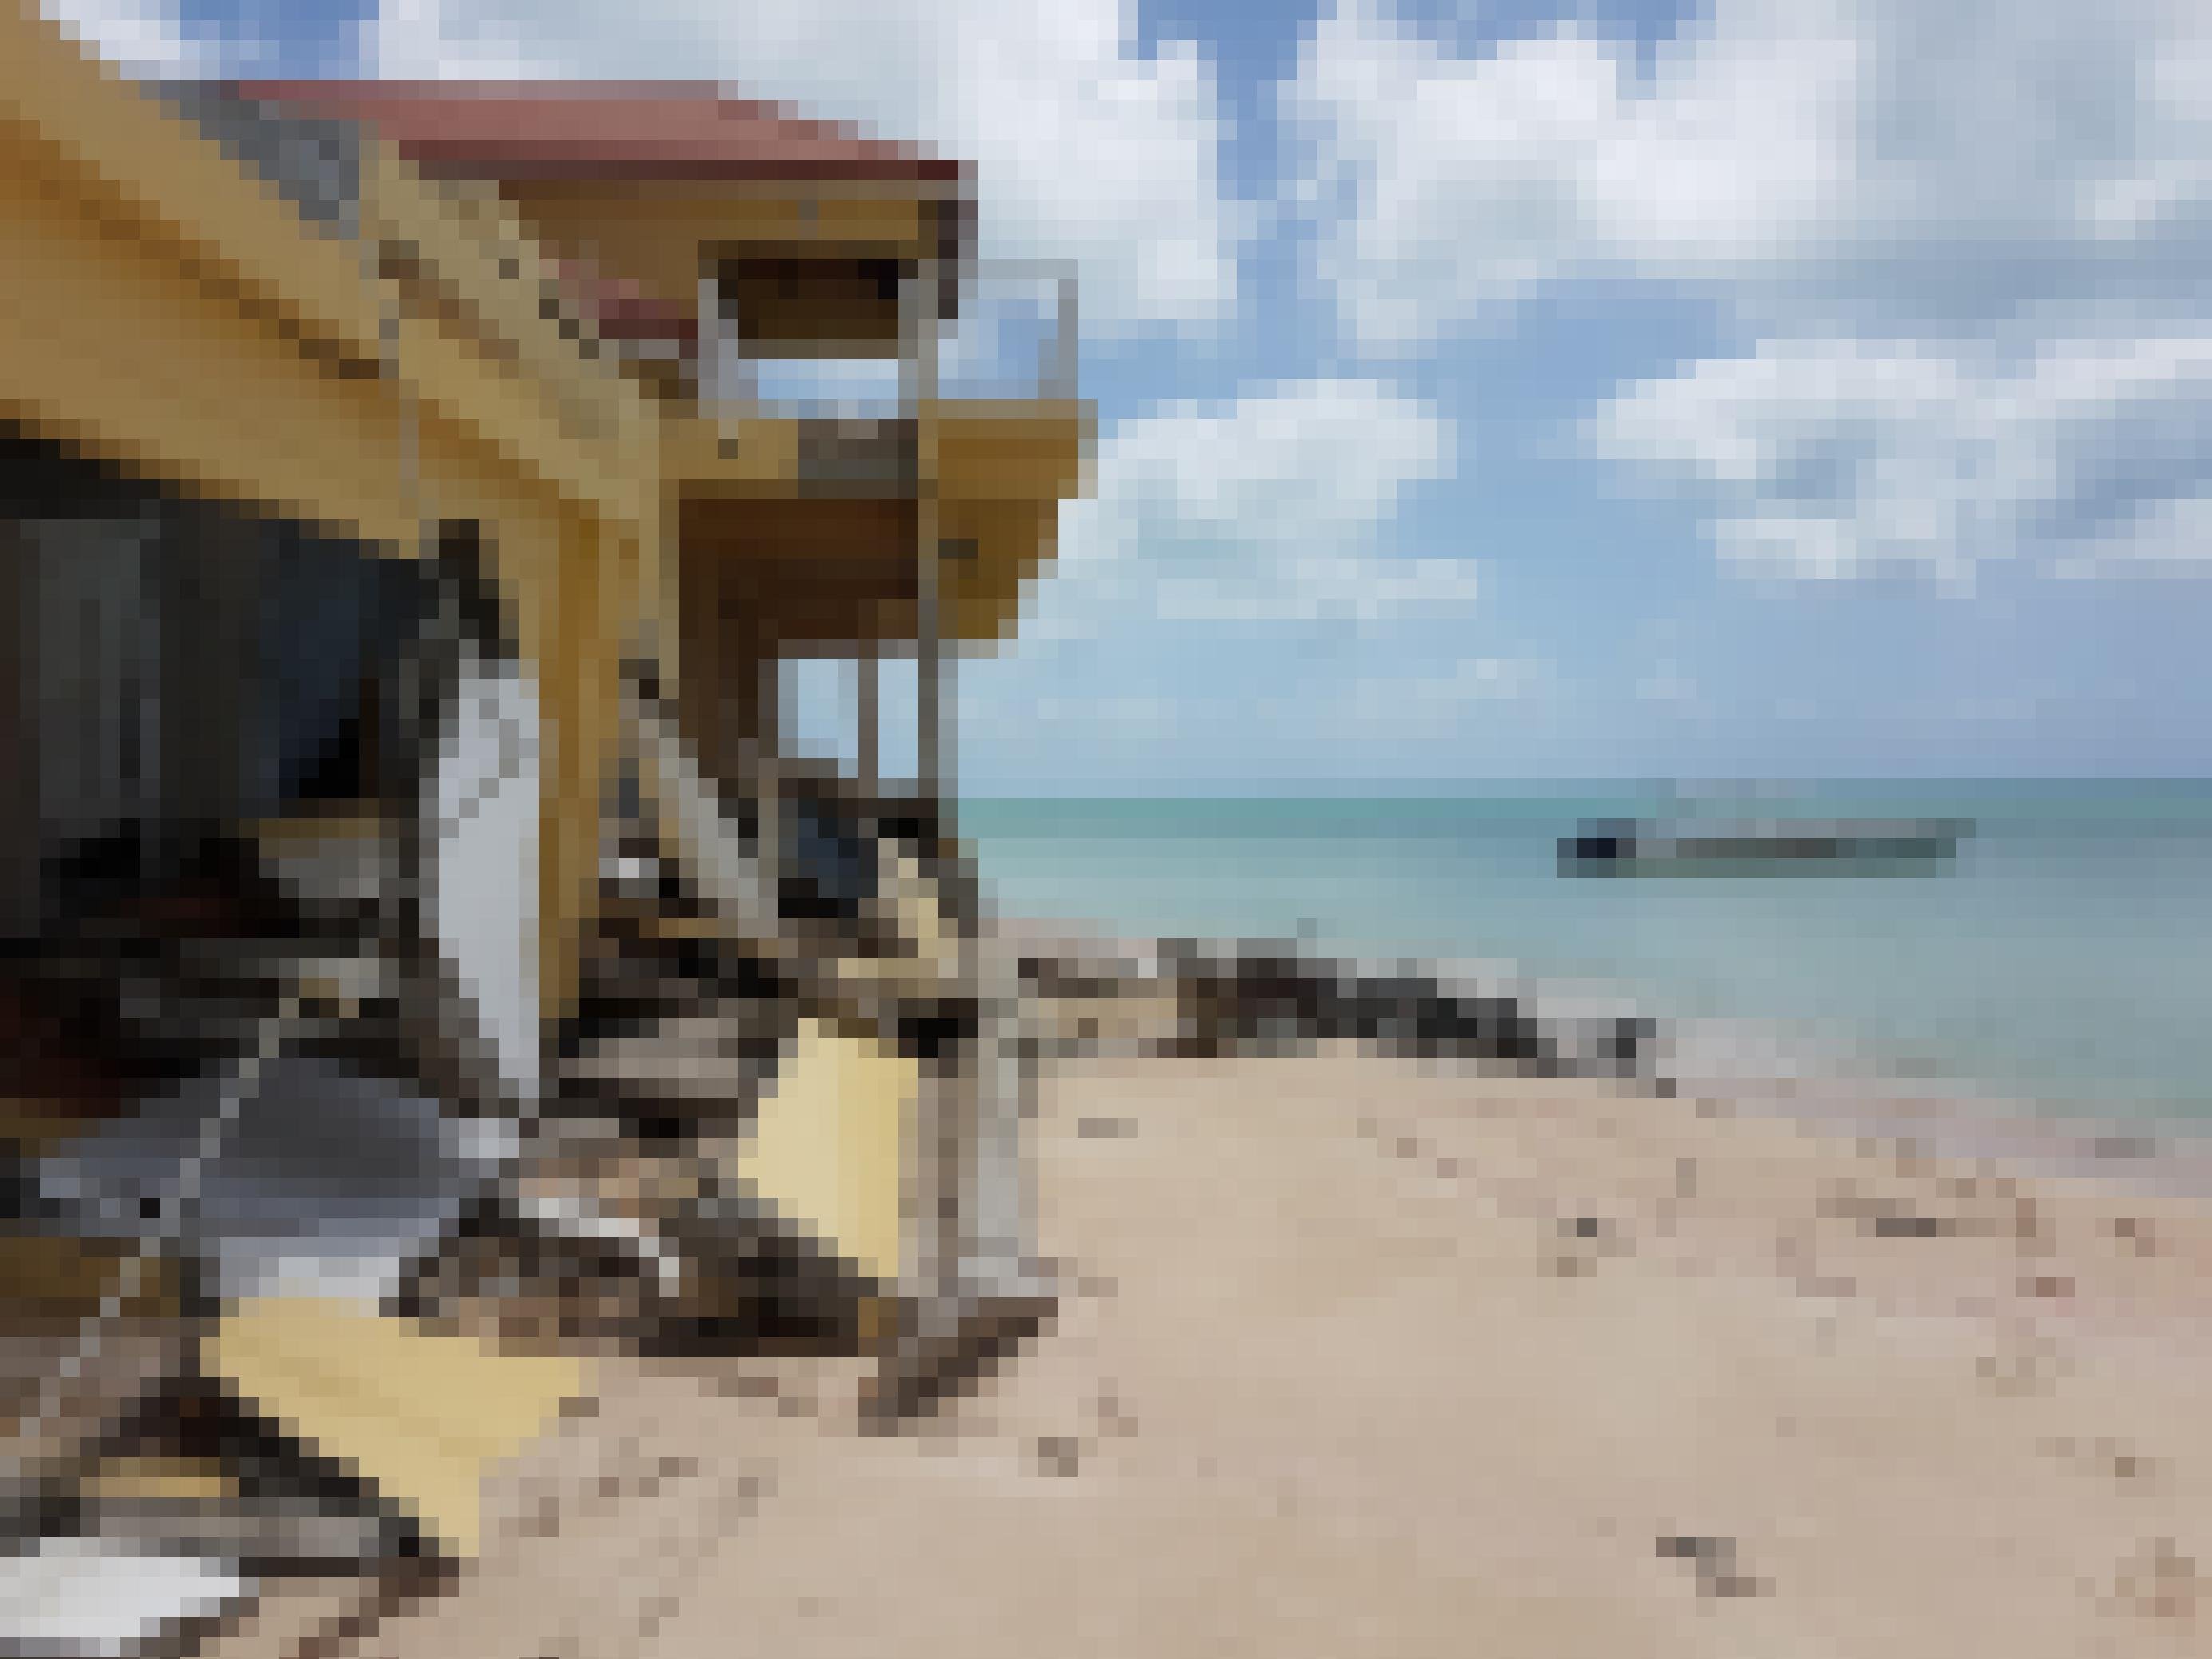 Ein zerstörtes Hotel am Meer